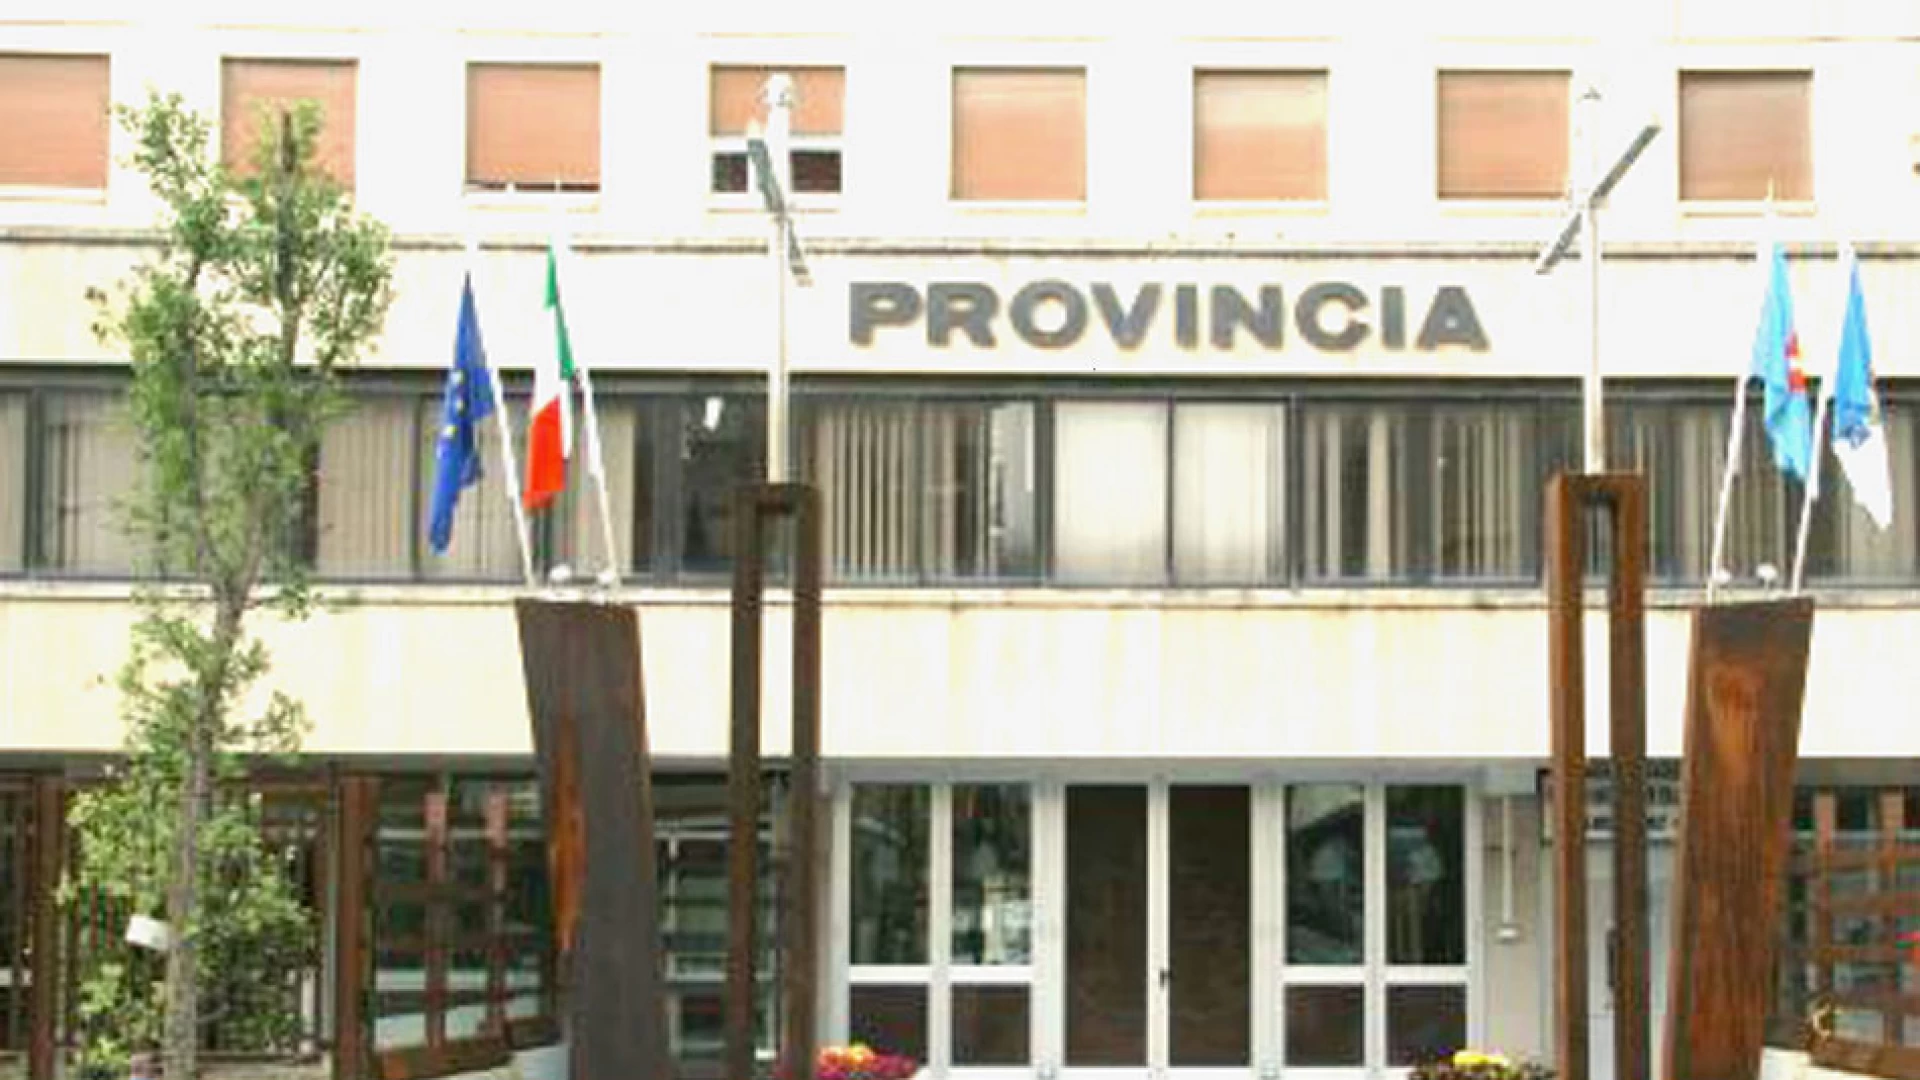 Strada provinciale Isernia-Colli a Volturno, il Consiglio provinciale varia il bilancio per gli ultimi interventi. L’assise di via Berta si riunirà anche per il rendiconto di gestione 2015.